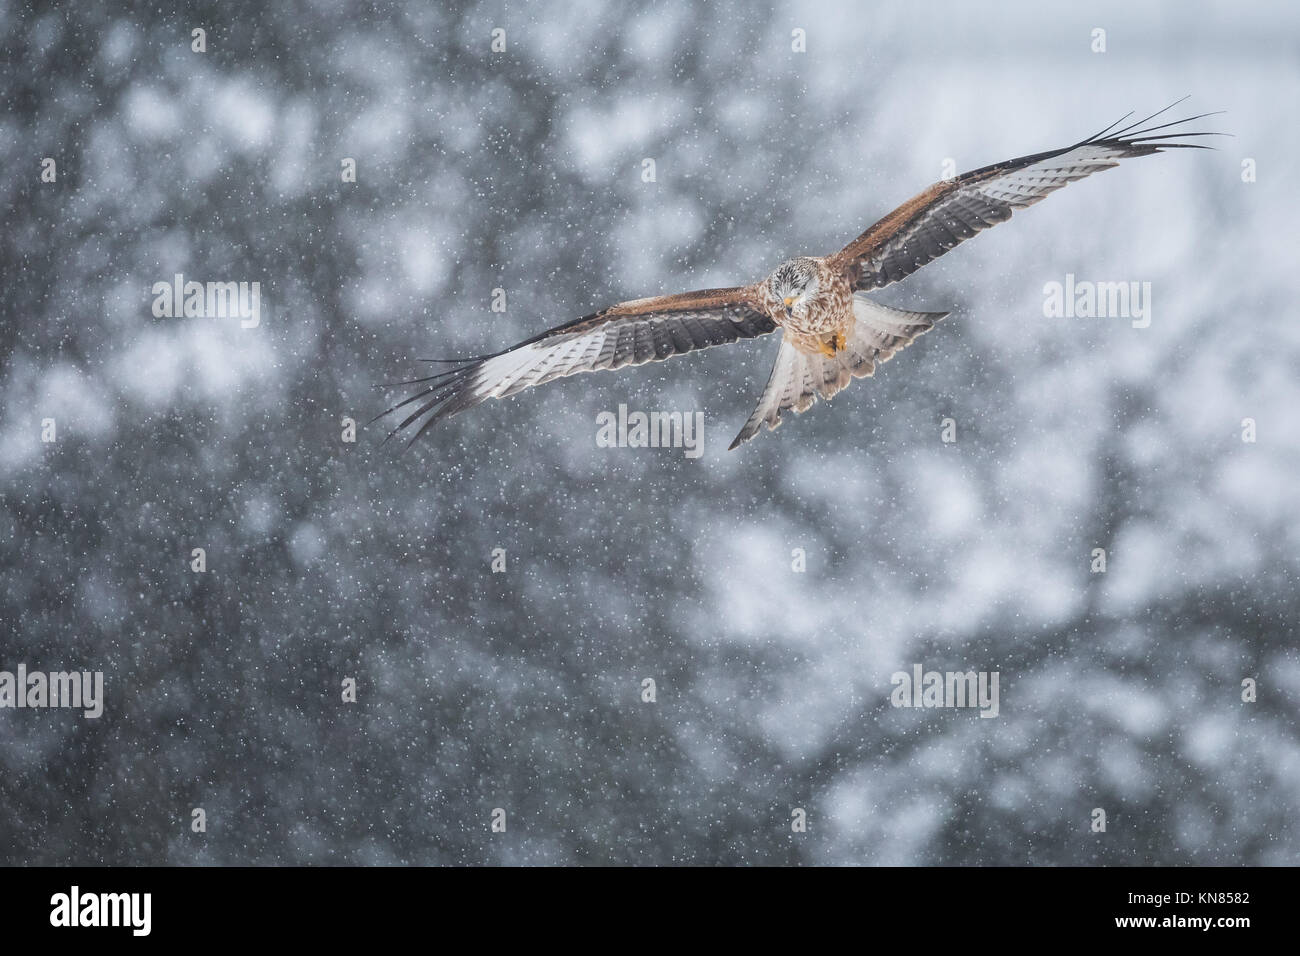 Le Milan royal (Milvus milvus) voler dans les fortes chutes de neige. Rhayader, Wales, UK - décembre Banque D'Images